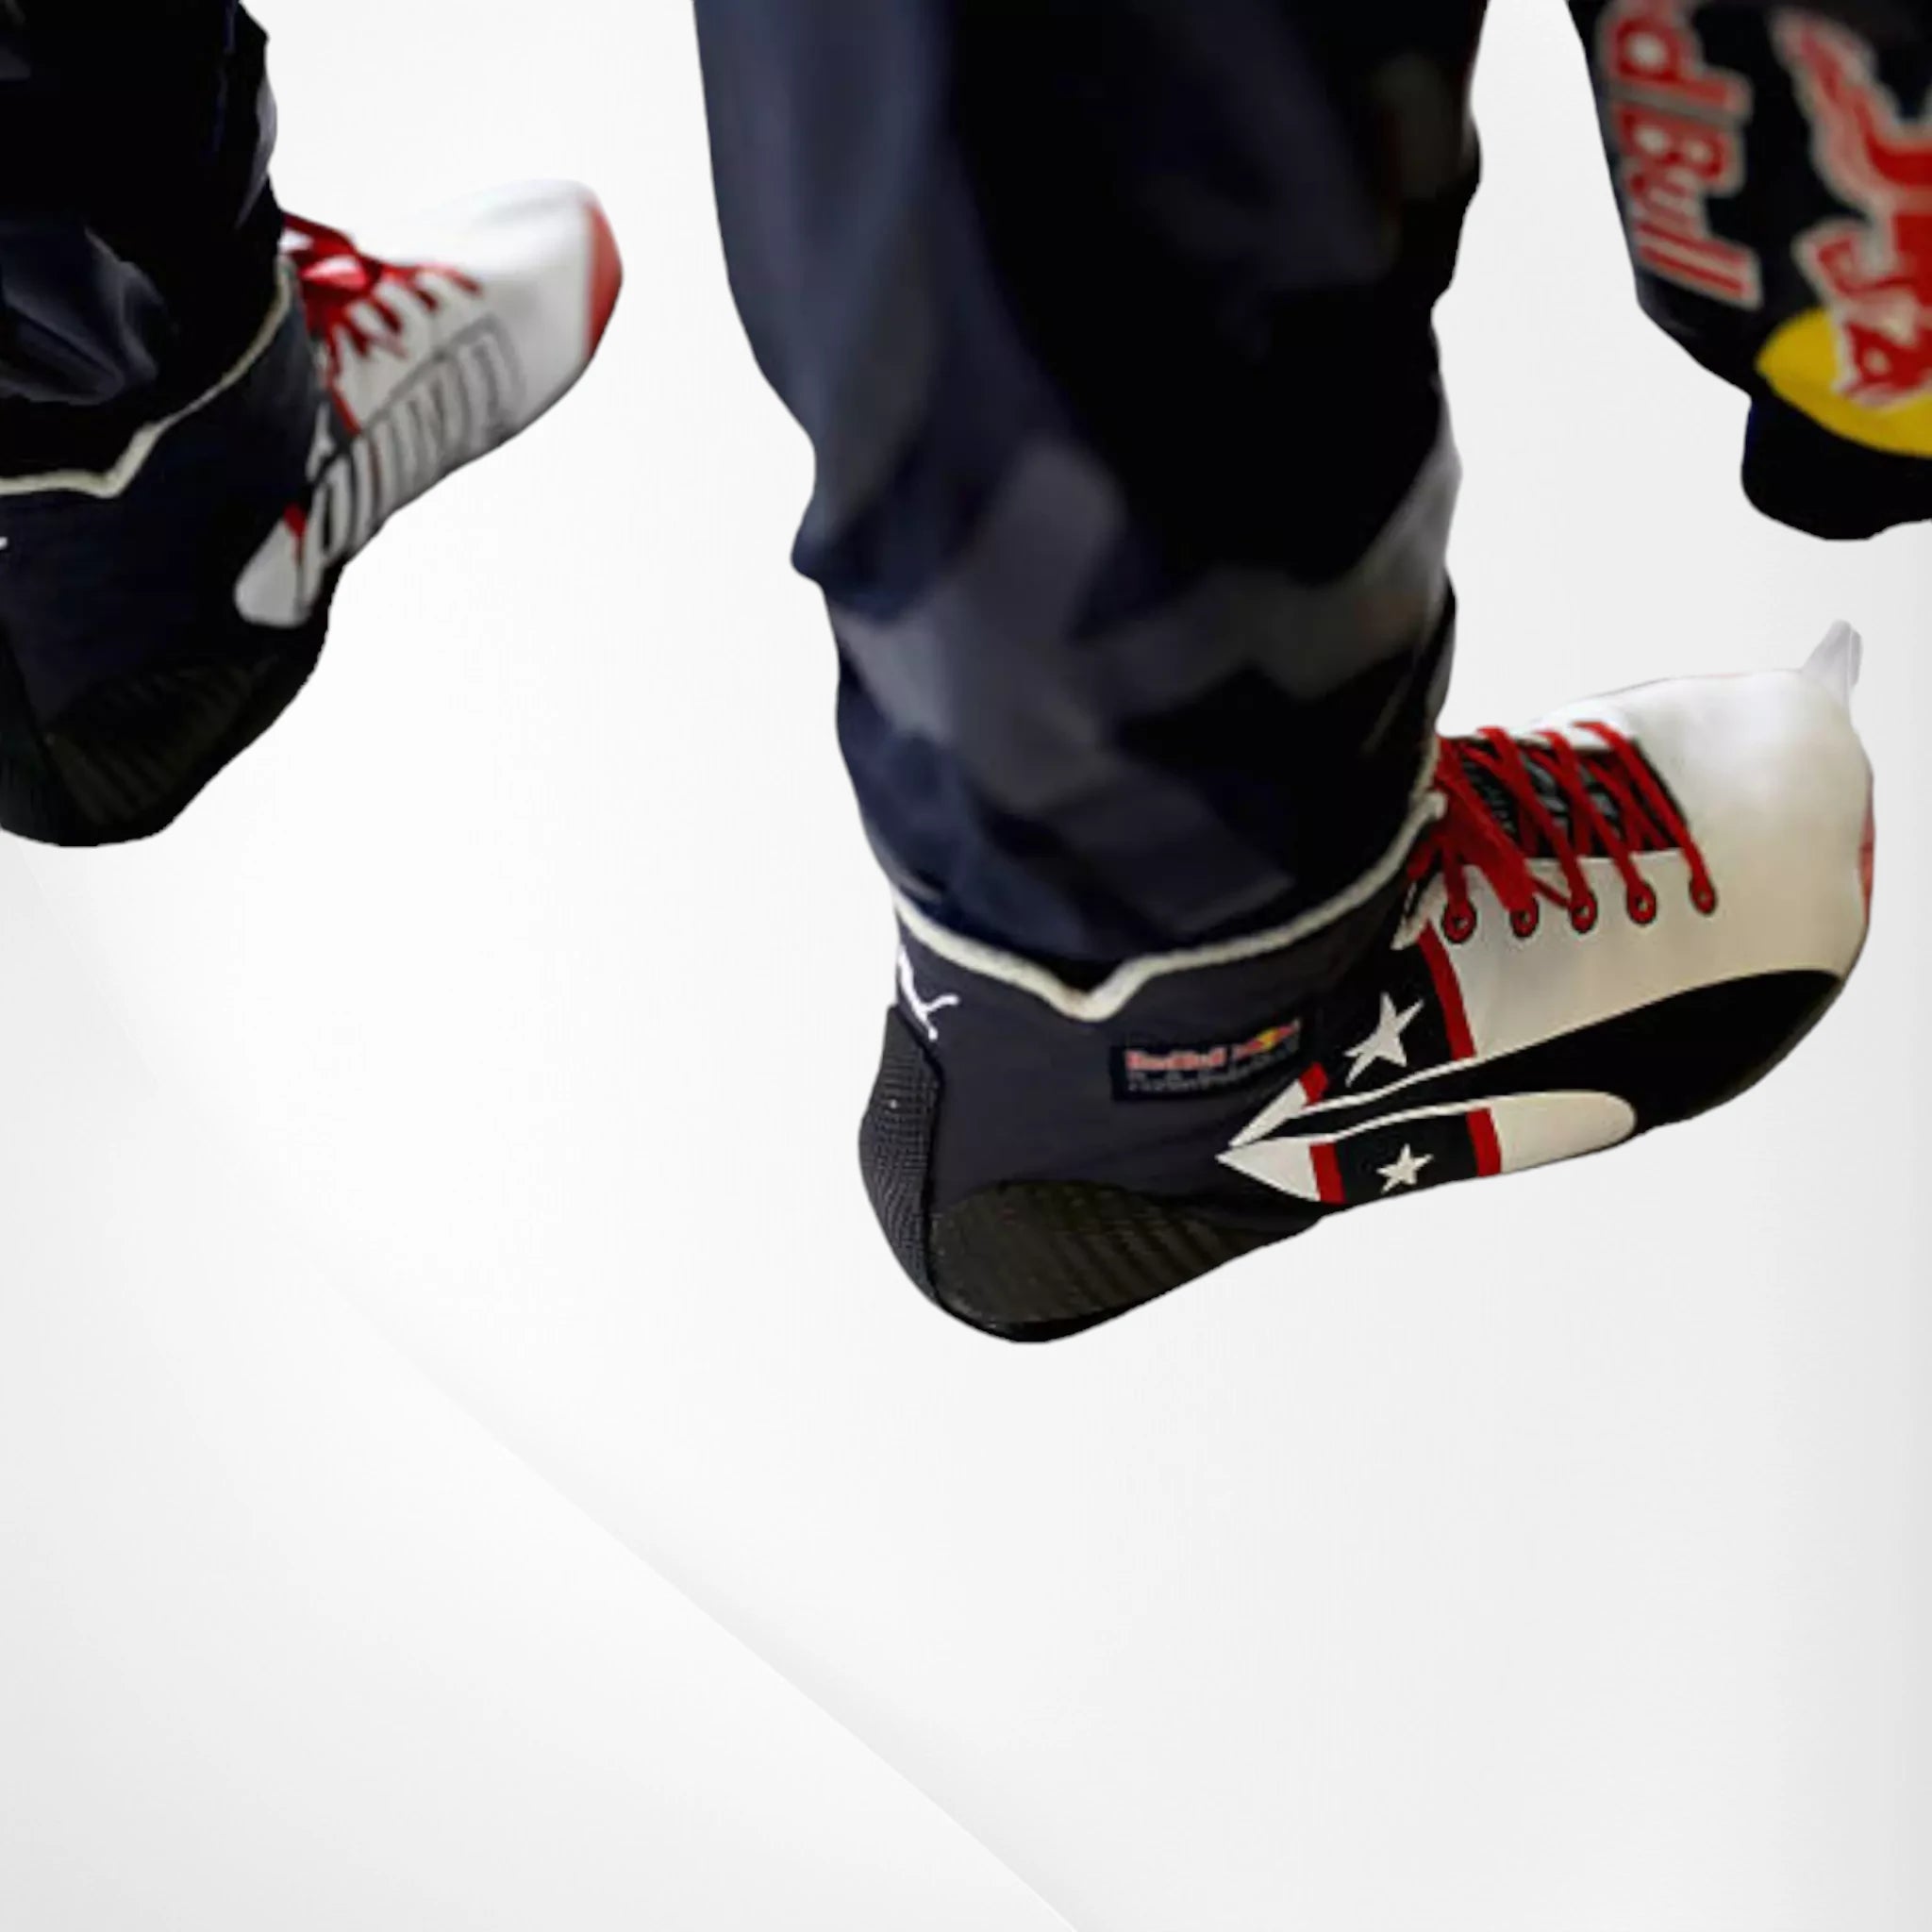 2016 Red Bull Daniel Ricciardo F1 Race Boots